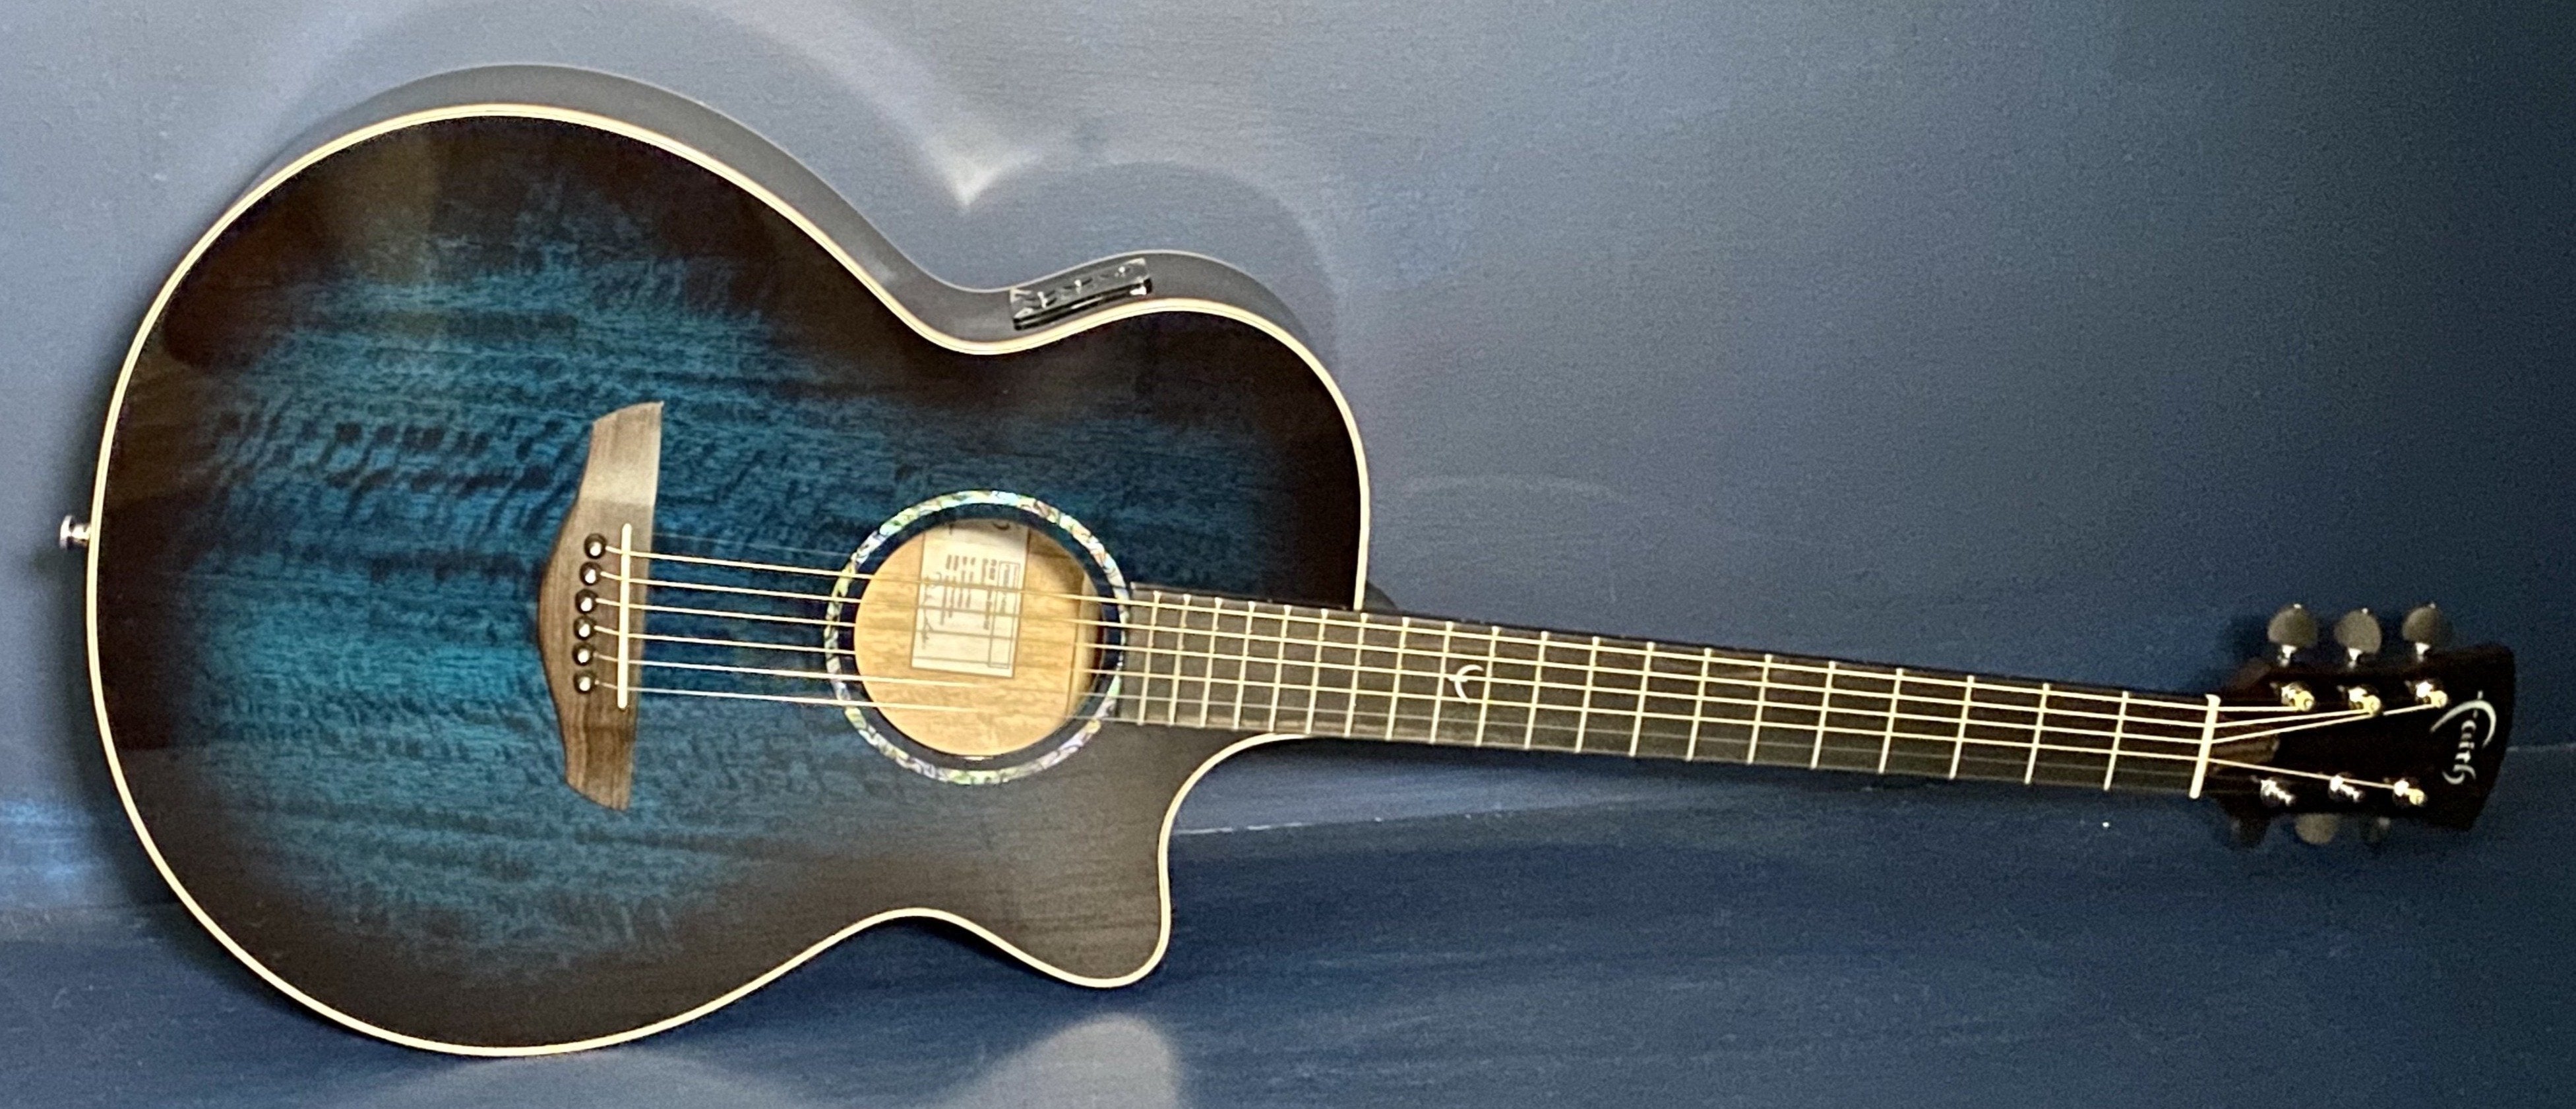 Faith FVBLM Blue Moon Venus Electro Acoustic Guitar [Reduced to clear!], Electro Acoustic Guitar for sale at Richards Guitars.